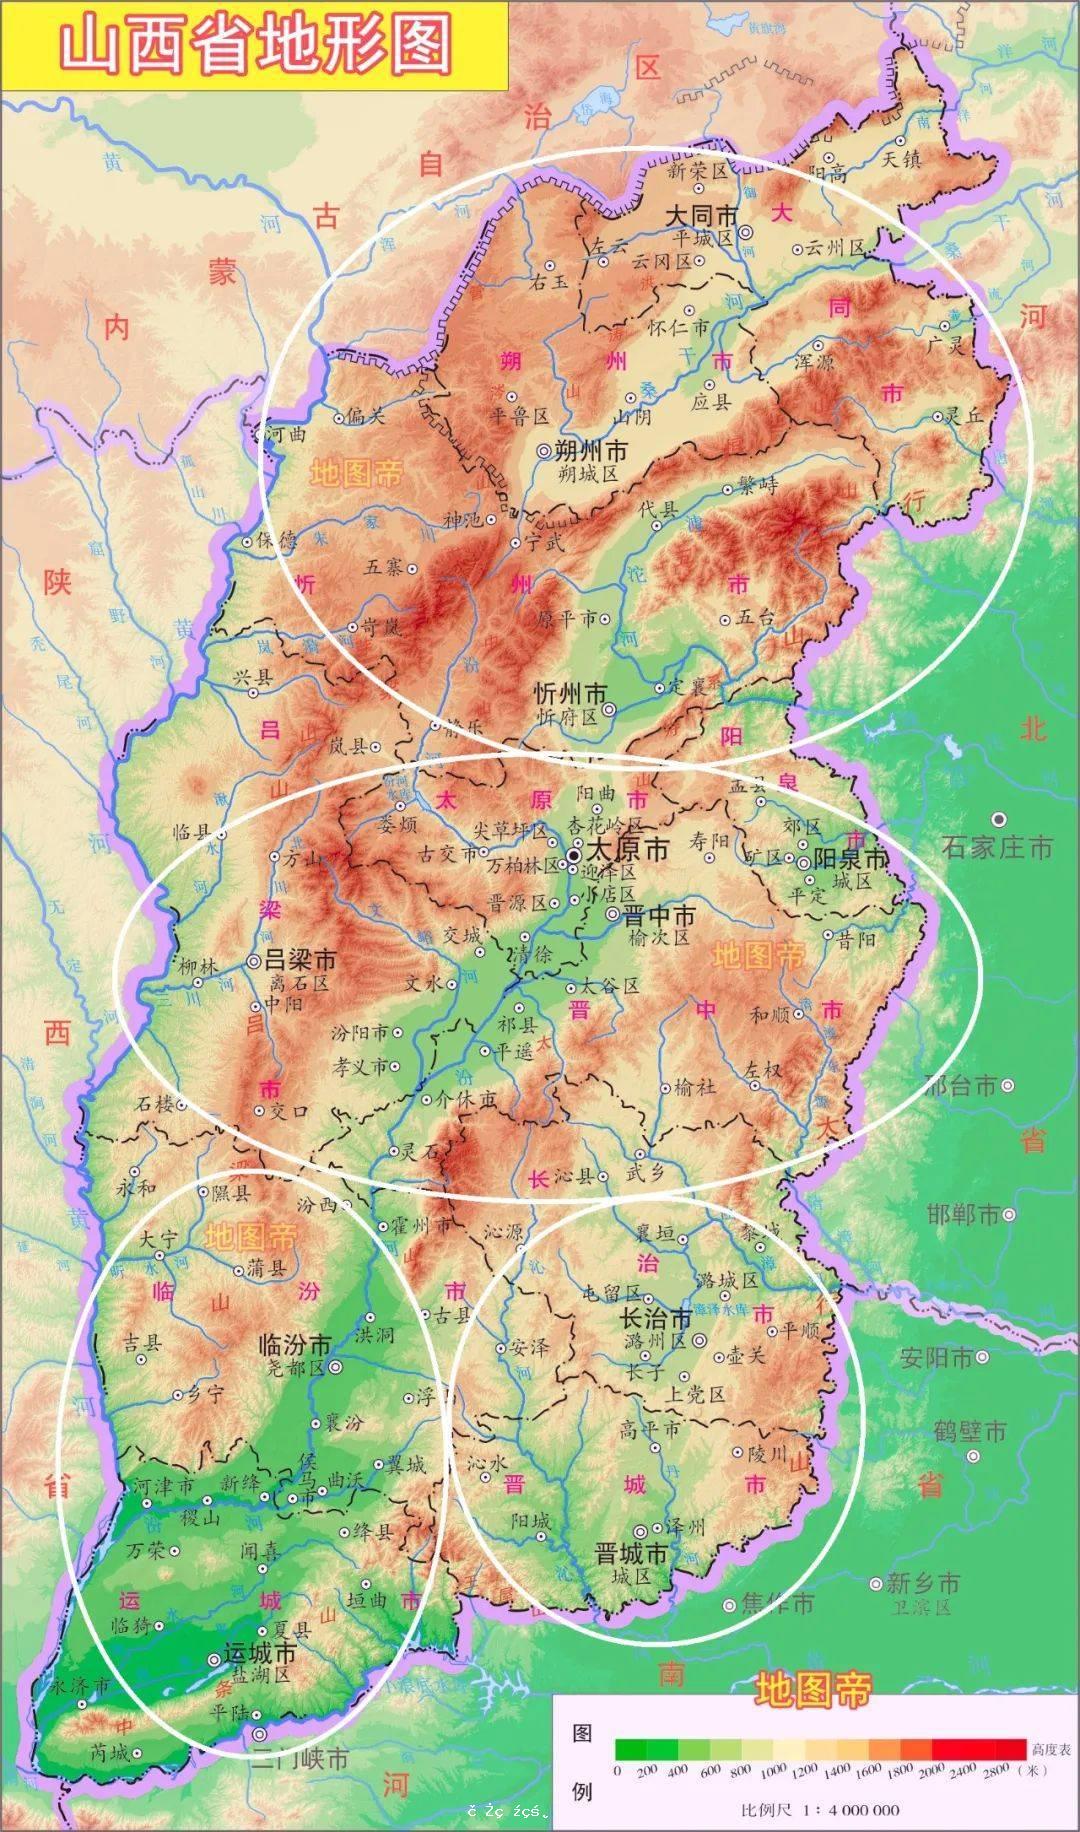 山西省是如何劃分晉北、晉中、晉南的？ 